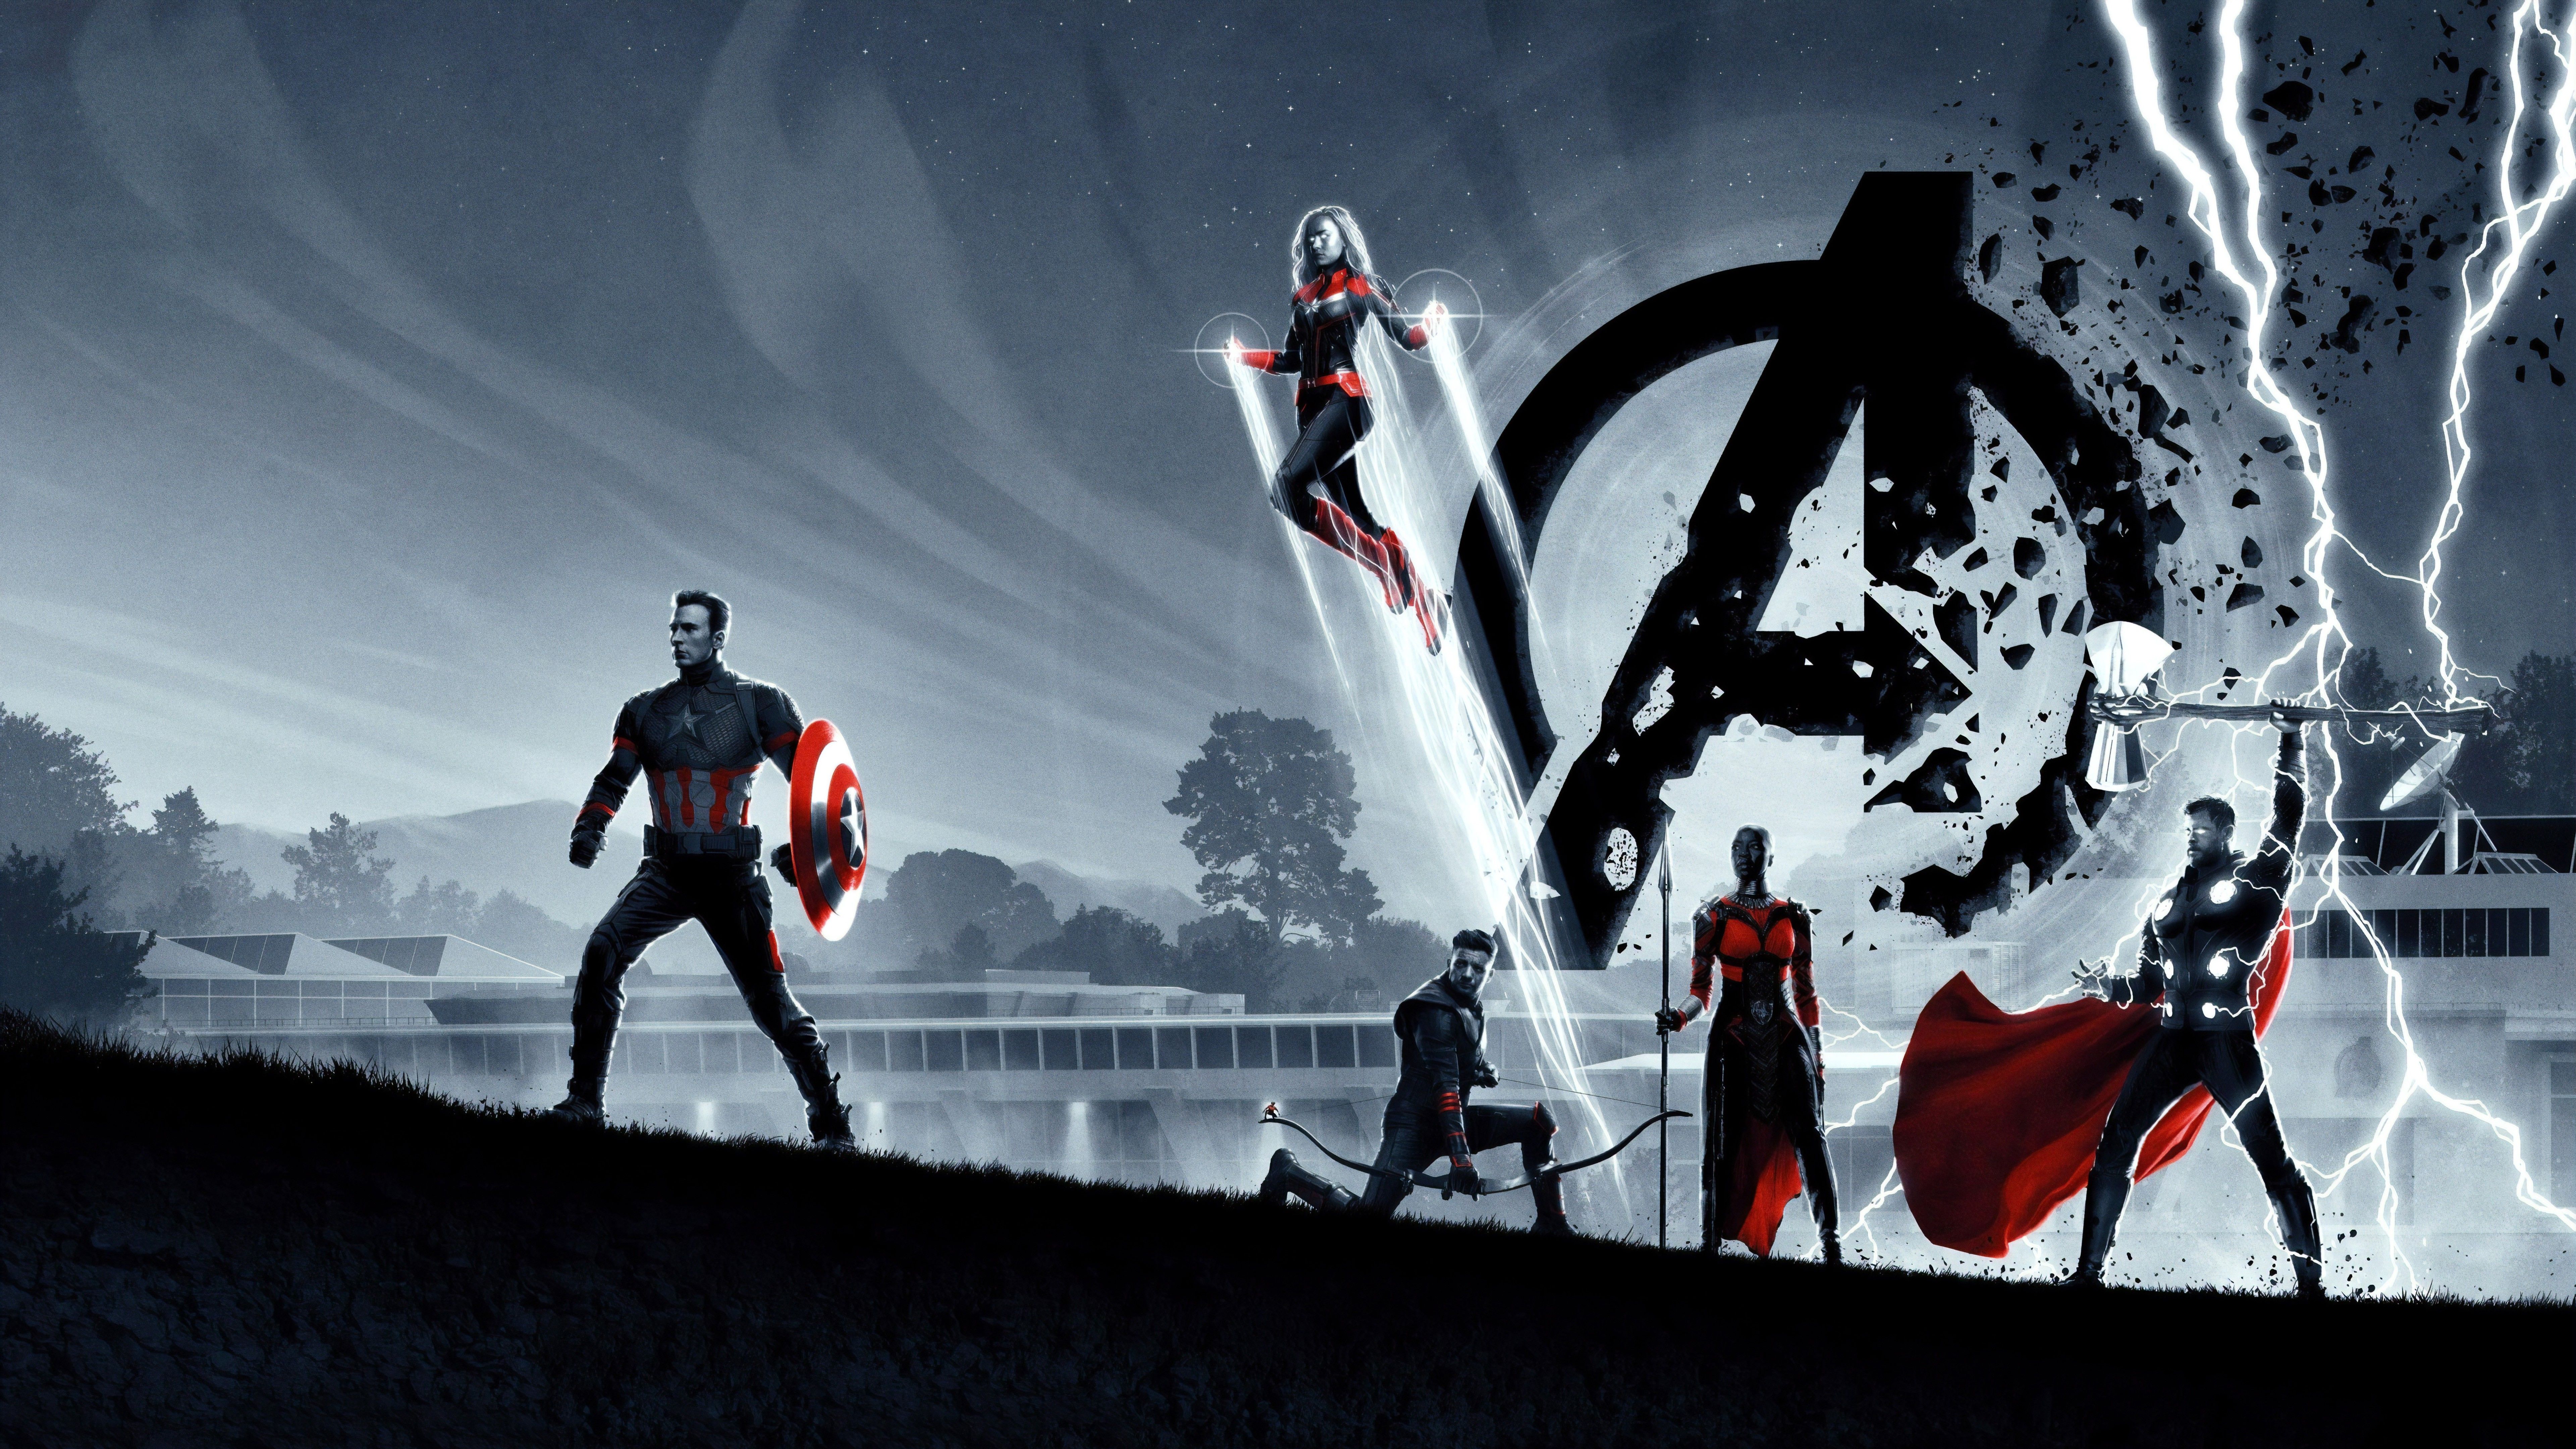 Hình nền Avengers 8K: Bạn là fan hâm mộ của siêu anh hùng Marvel? Hãy trang trí màn hình của bạn với hình nền Avengers 8K để tạo cho mình một không gian làm việc hoàn hảo. Chất lượng hình ảnh tuyệt vời và màu sắc sặc sỡ của các nhân vật sẽ đưa bạn đến với thế giới siêu năng lực đầy màu sắc.